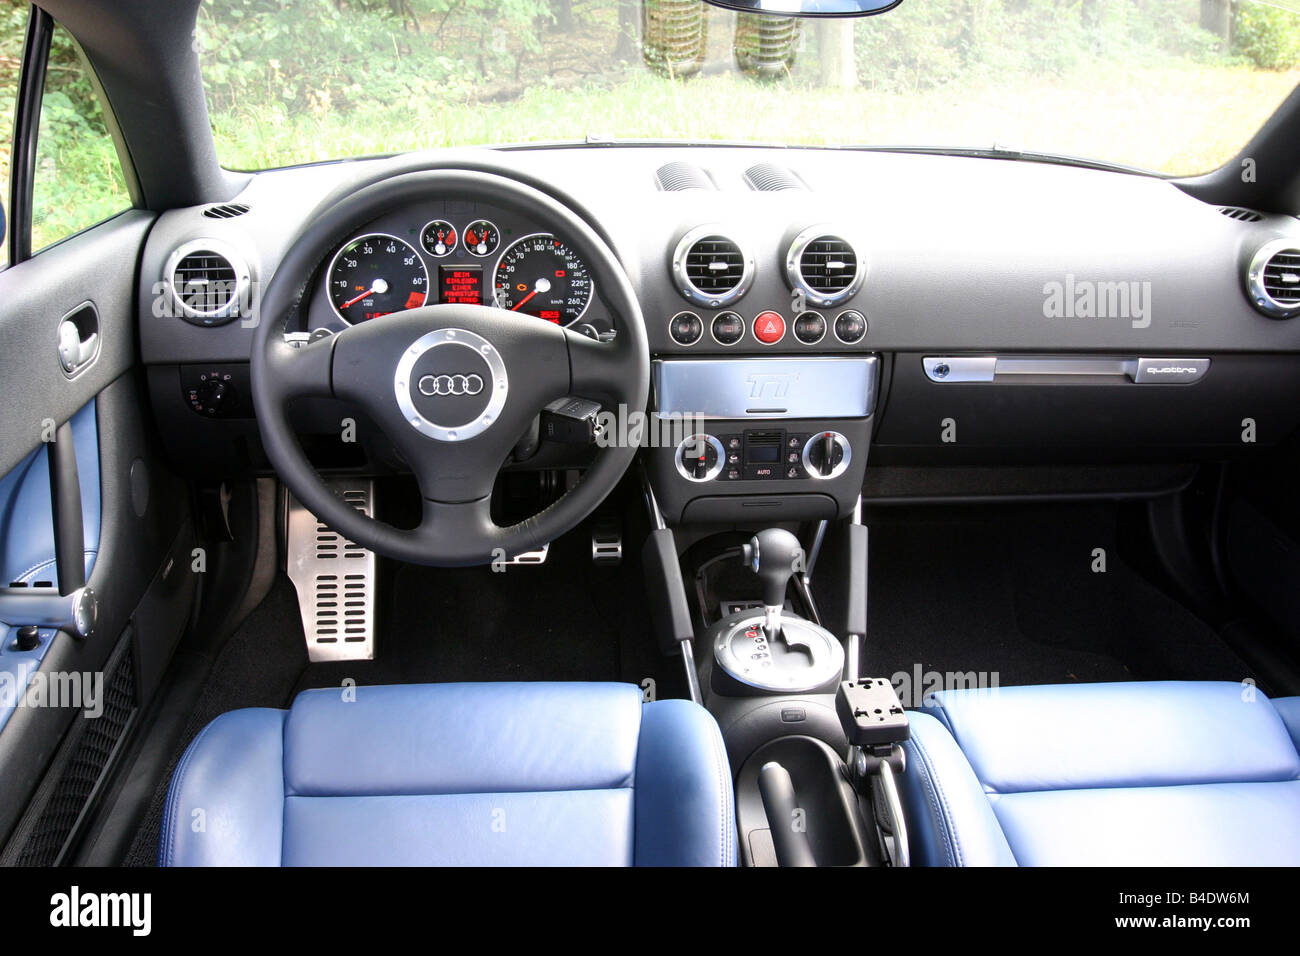 https://c8.alamy.com/compde/b4dw6m/auto-audi-tt-32-coupe-roadster-baujahr-2003-blau-innere-besichtigen-innenansicht-cockpit-technikzubehor-accessori-b4dw6m.jpg